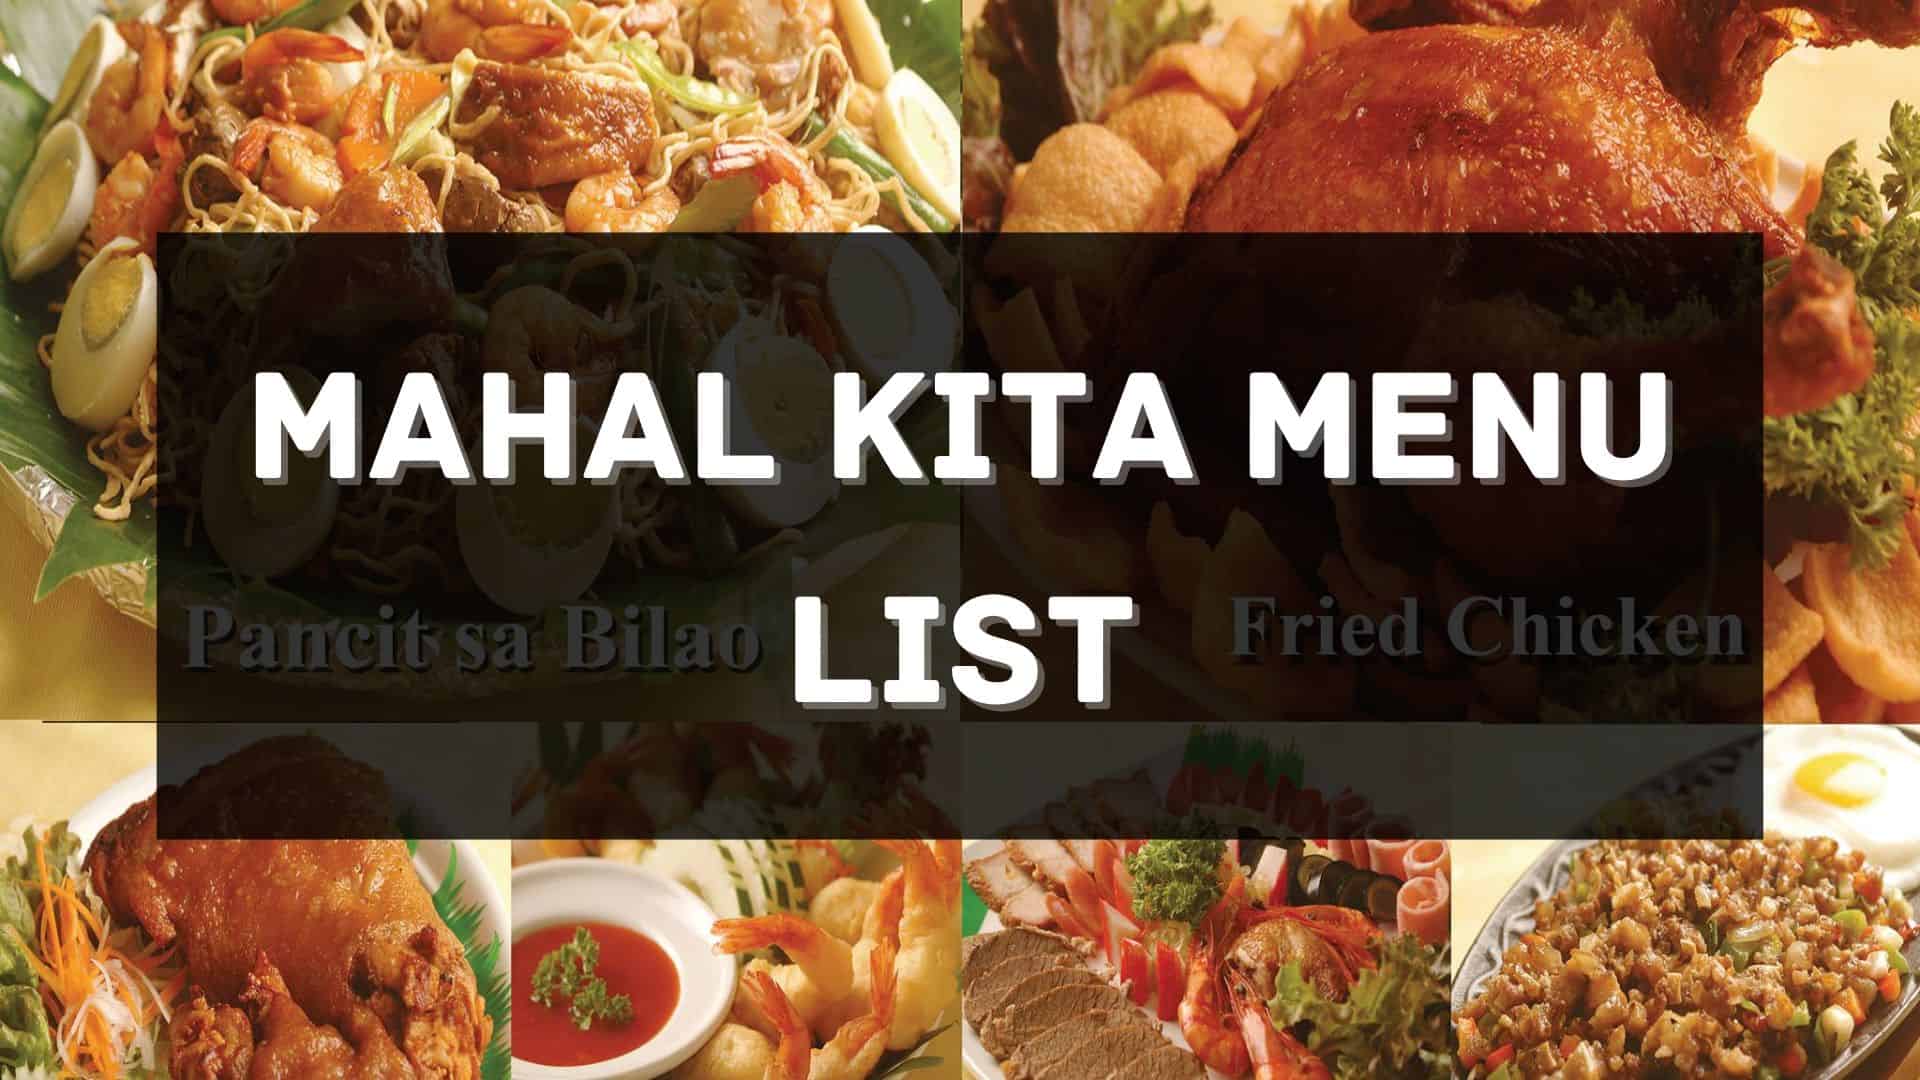 mahal kita menu prices philippines